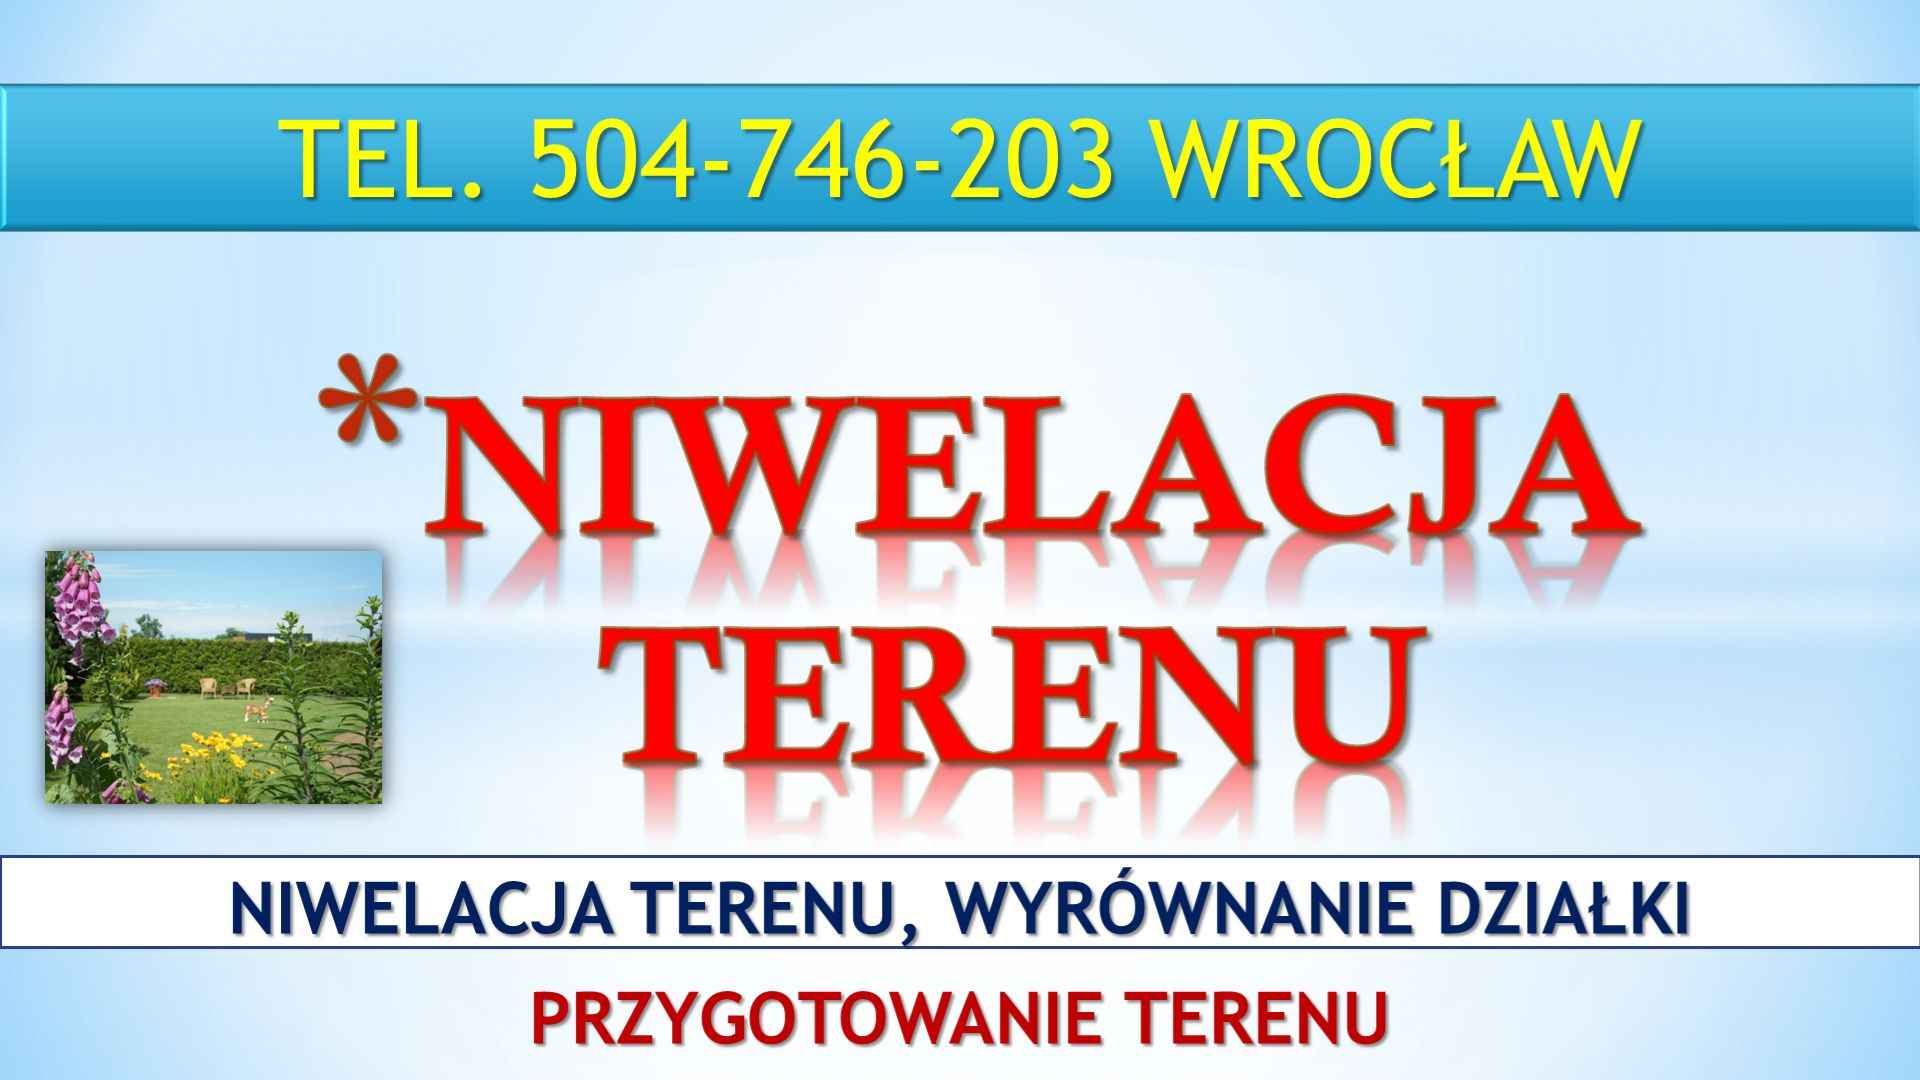 Niwelacja terenu działki, Wrocław, tel. 504-746-203. Wyrównanie terenu Psie Pole - zdjęcie 3